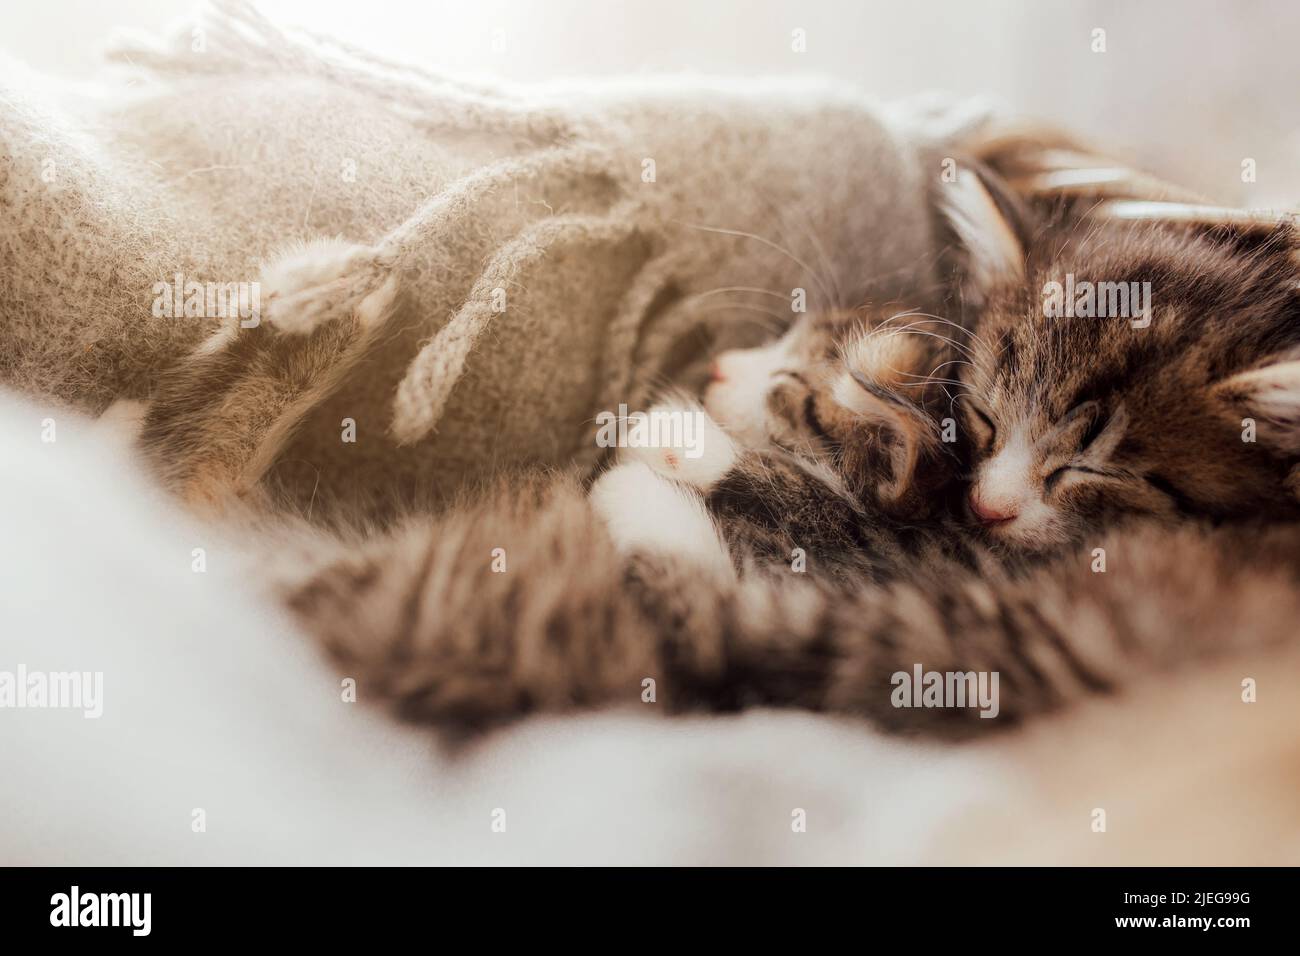 Kleine niedliche Kätzchen schlafen in einer Umarmung, die mit einer Decke bedeckt ist. Lichteffekt. Süße Katzen umarmen sich gegenseitig. Ich liebe und schütze Haustiere. Tierschutz und Tierpflege. Hochwertige Fotos Stockfoto